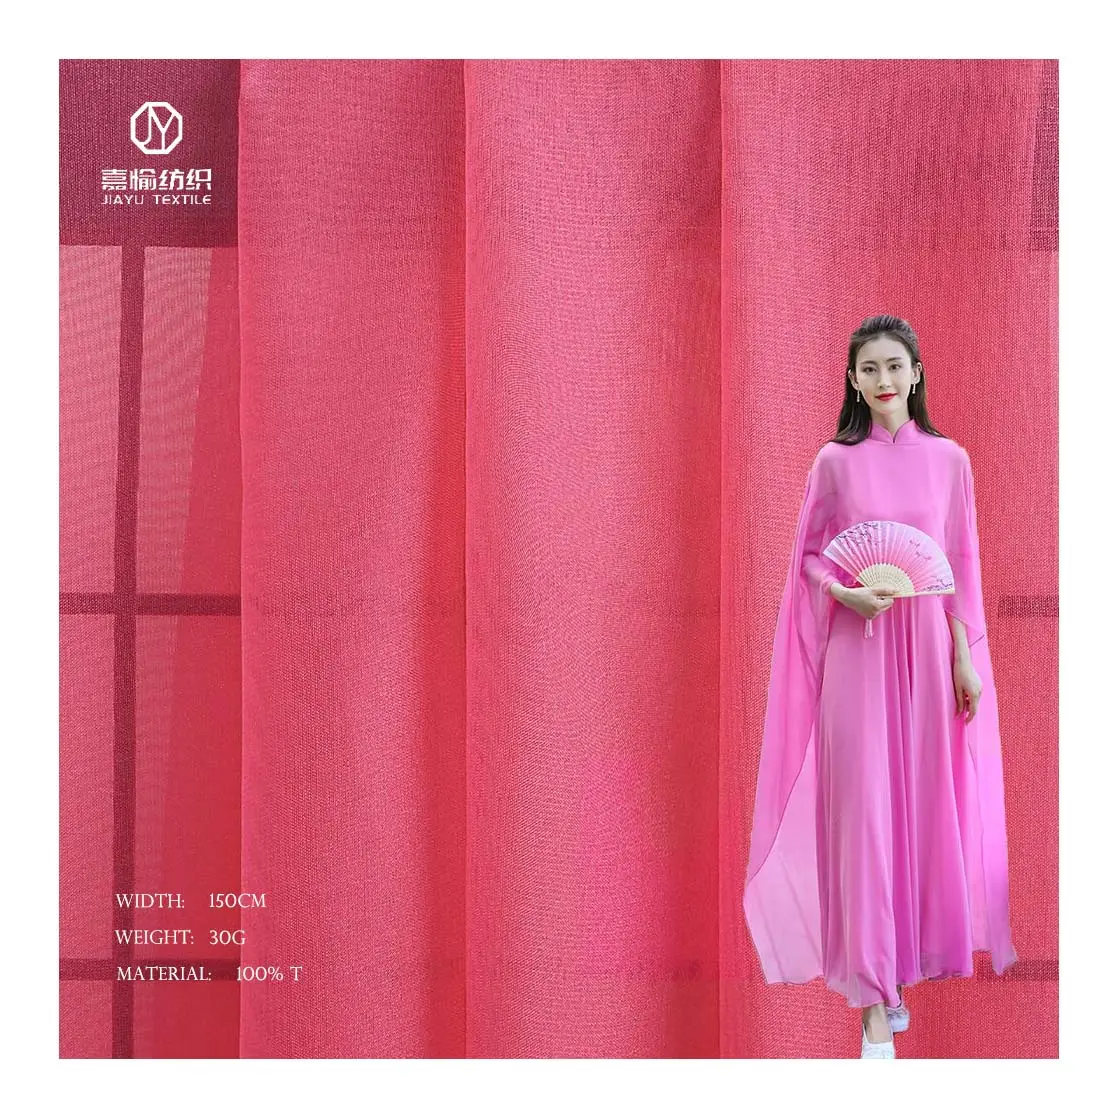 Rok Princess Anak Perempuan, Gaun Kain Sifon Kain Tulle Polos Tekstil Pakaian Modis Bahan Poliester 30D Warna Merah Muda untuk Wanita